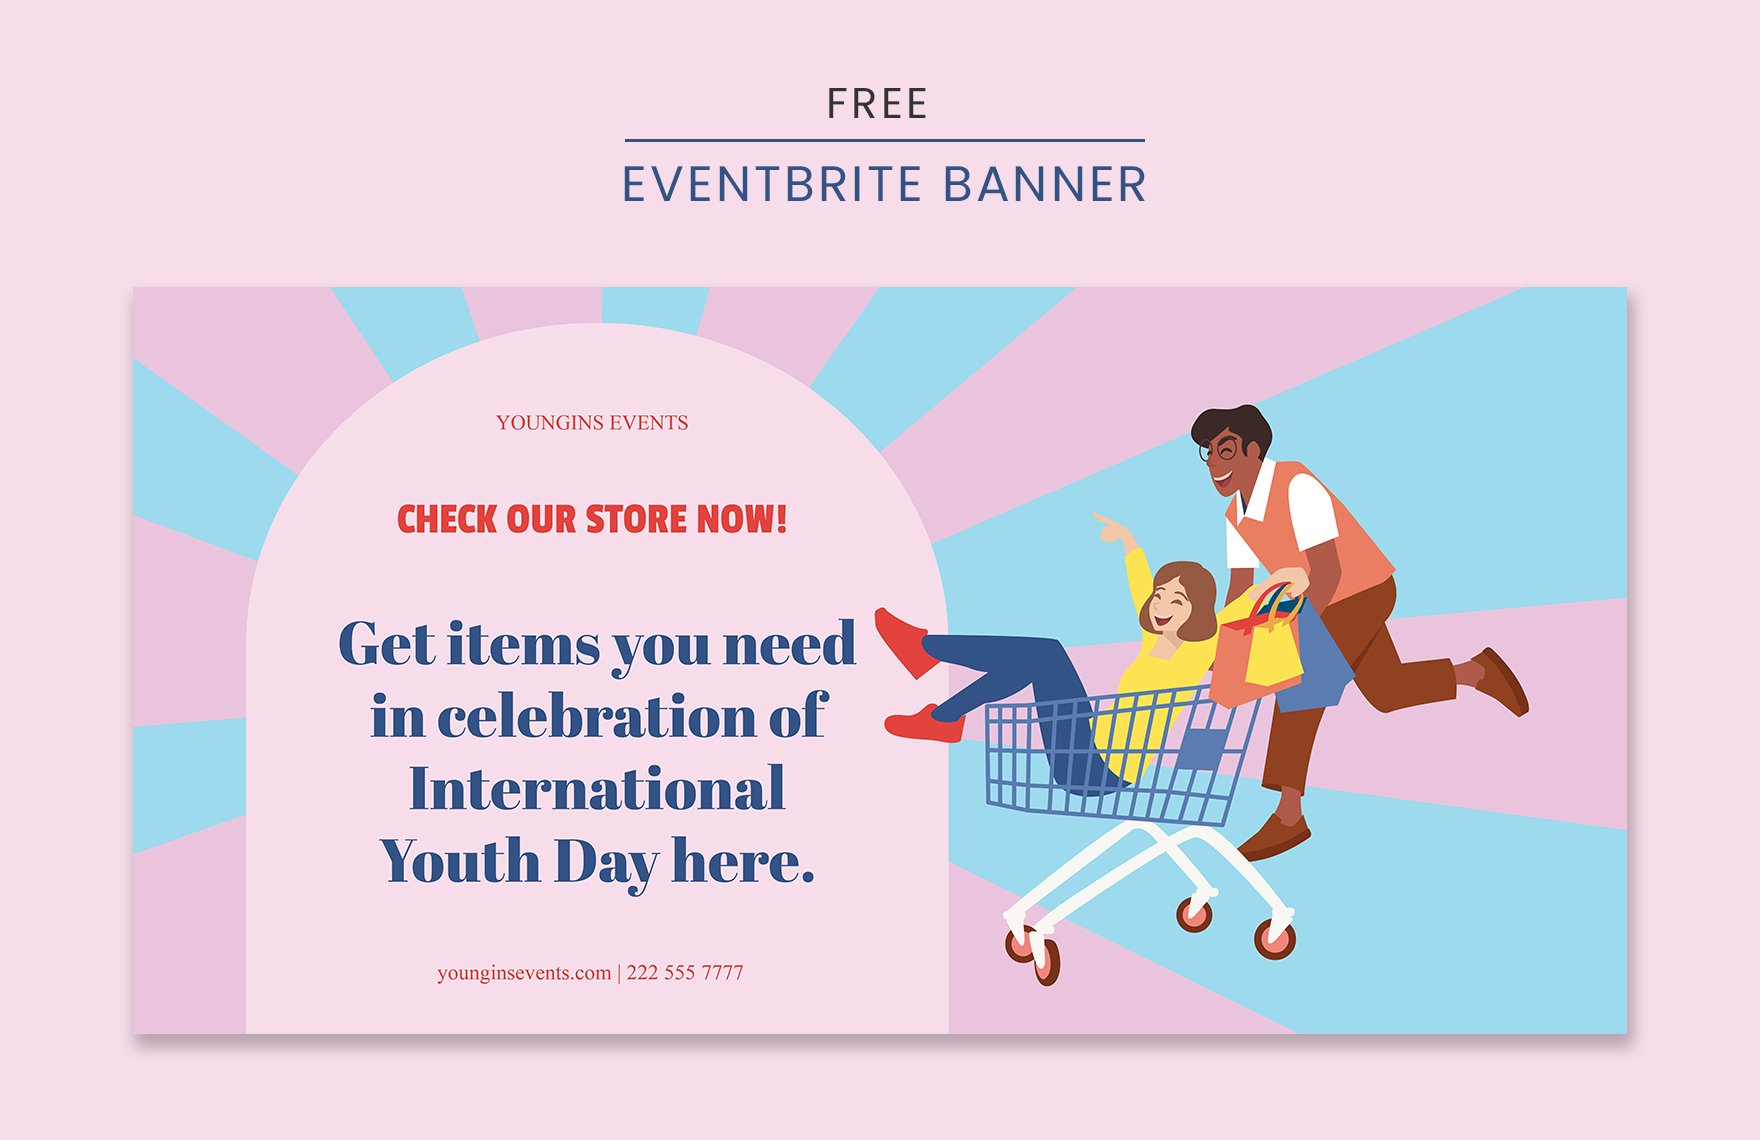 International Youth Day Eventbrite Banner